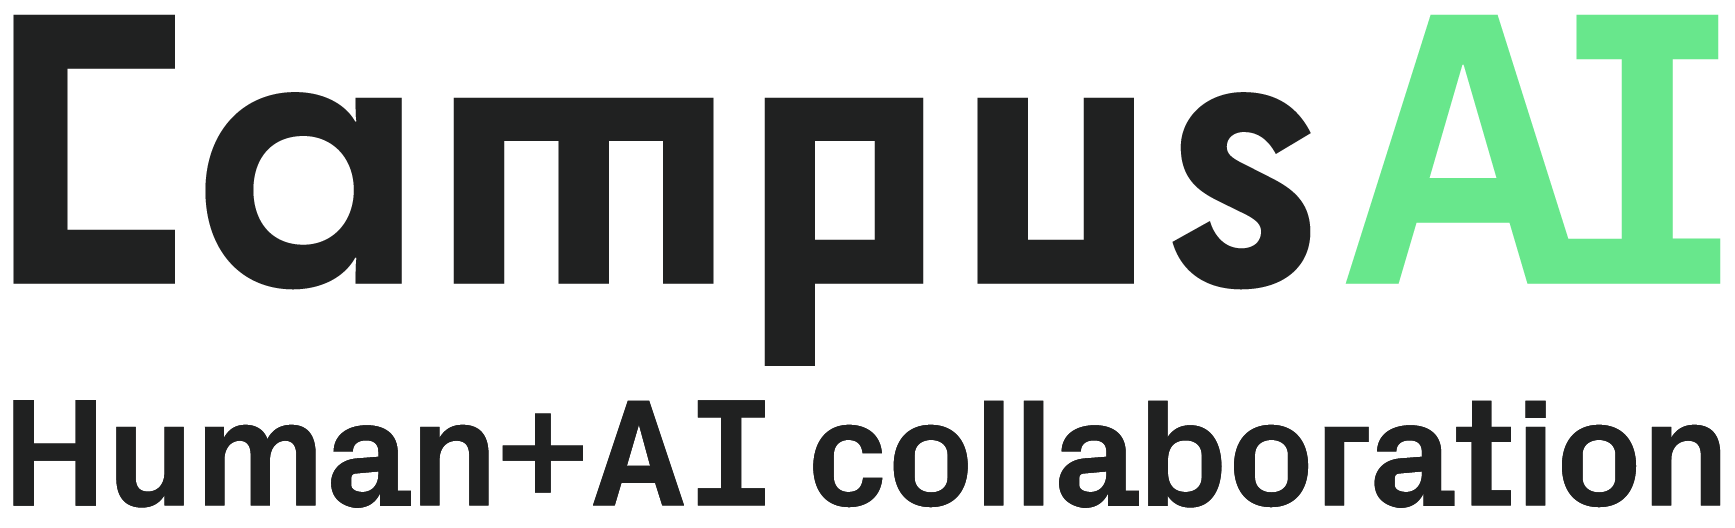 CampusAI | Human+AI Collaboration